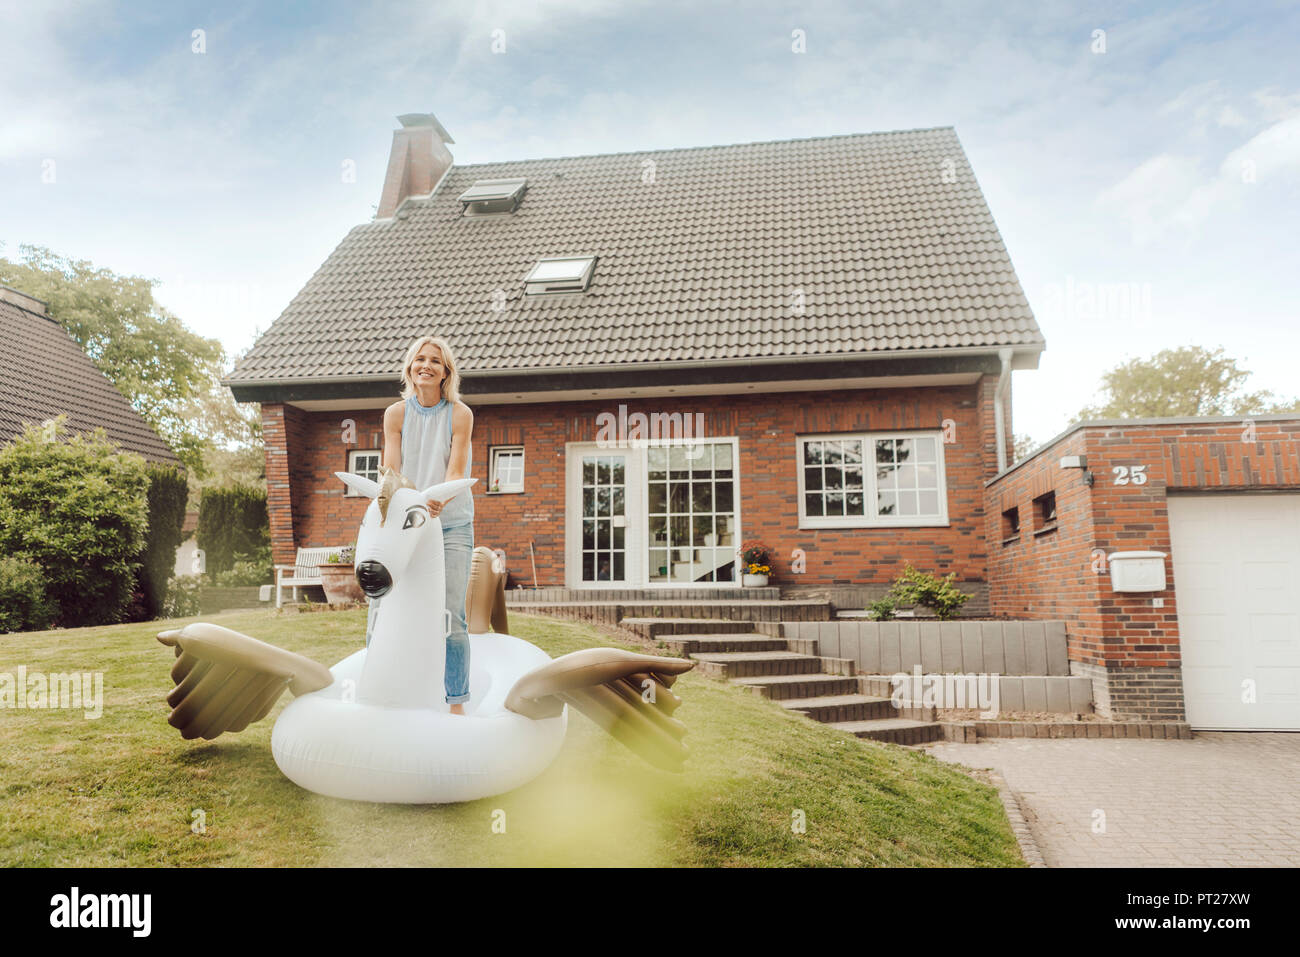 Portrait of smiling mature woman avec piscine gonflable jouet dans sa maison de jardin Banque D'Images